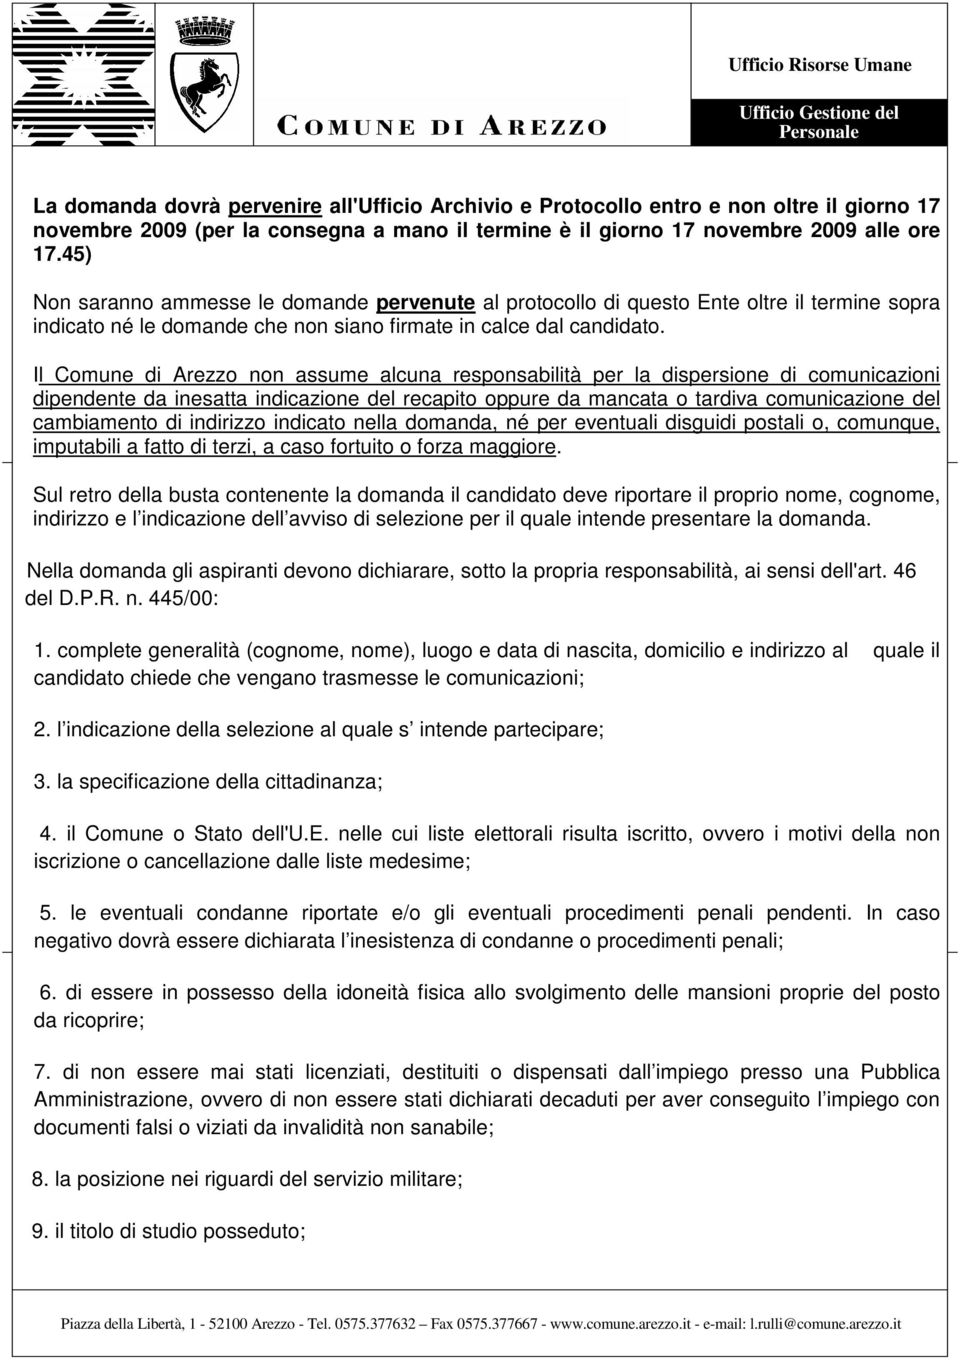 Il Comune di Arezzo non assume alcuna responsabilità per la dispersione di comunicazioni dipendente da inesatta indicazione del recapito oppure da mancata o tardiva comunicazione del cambiamento di